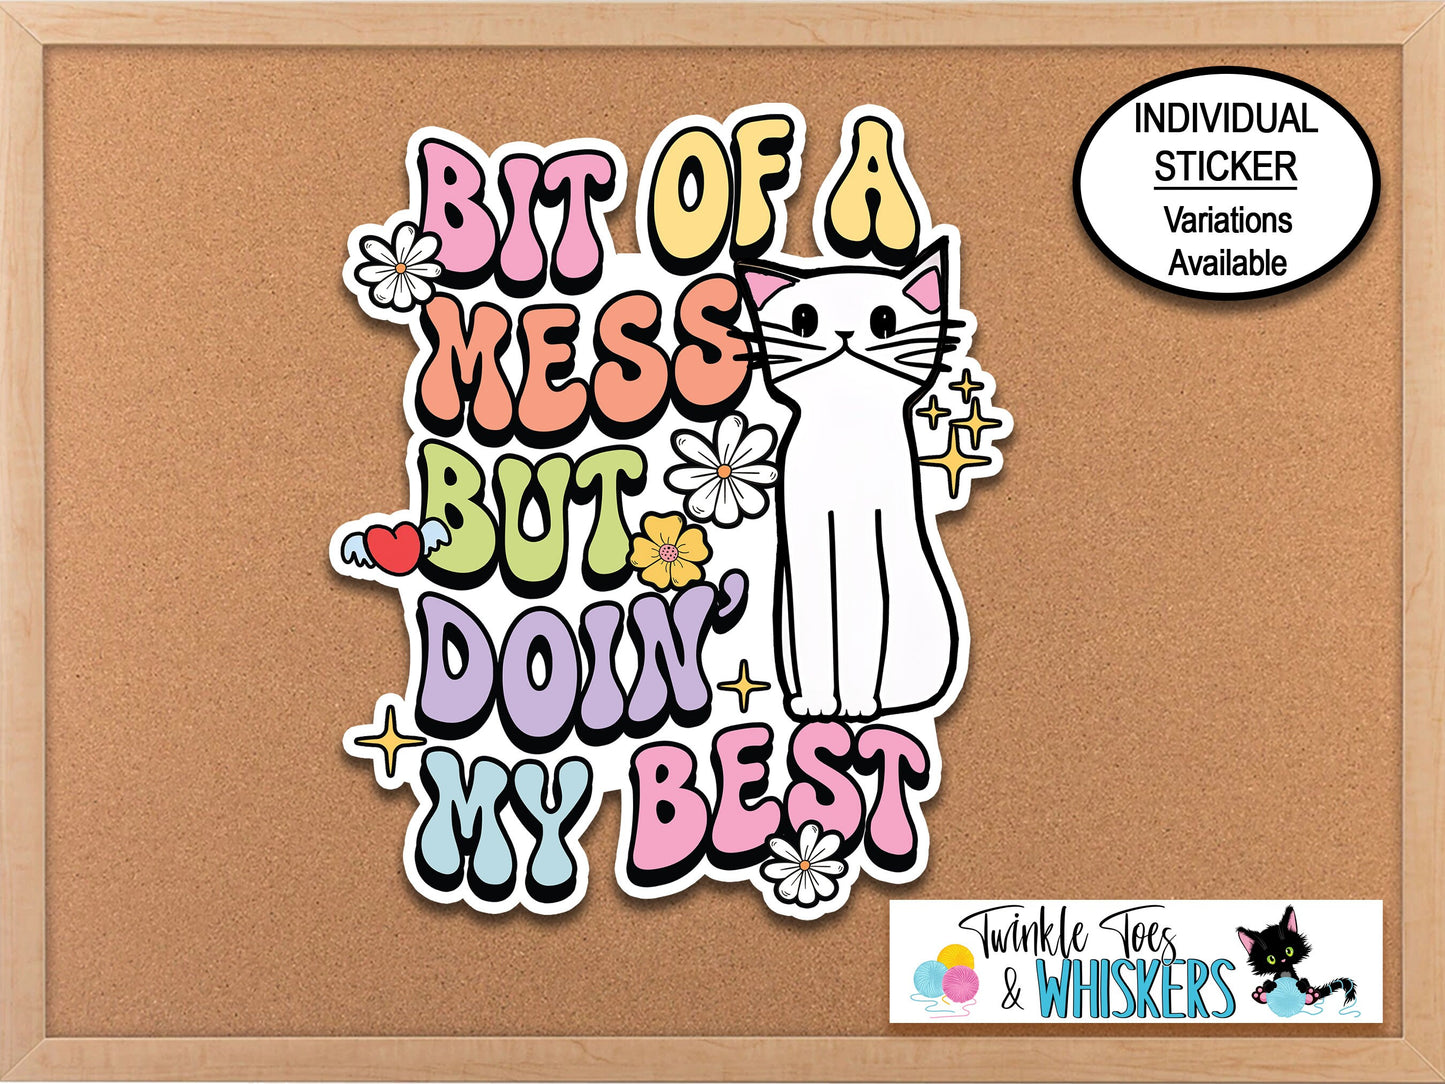 Bit Of A Mess But Doin My Best Cat Sticker, Mental Health, Cat Mom Sticker, Cat Sticker, Therapist Gift, Counselor Sticker, Groovy Sticker